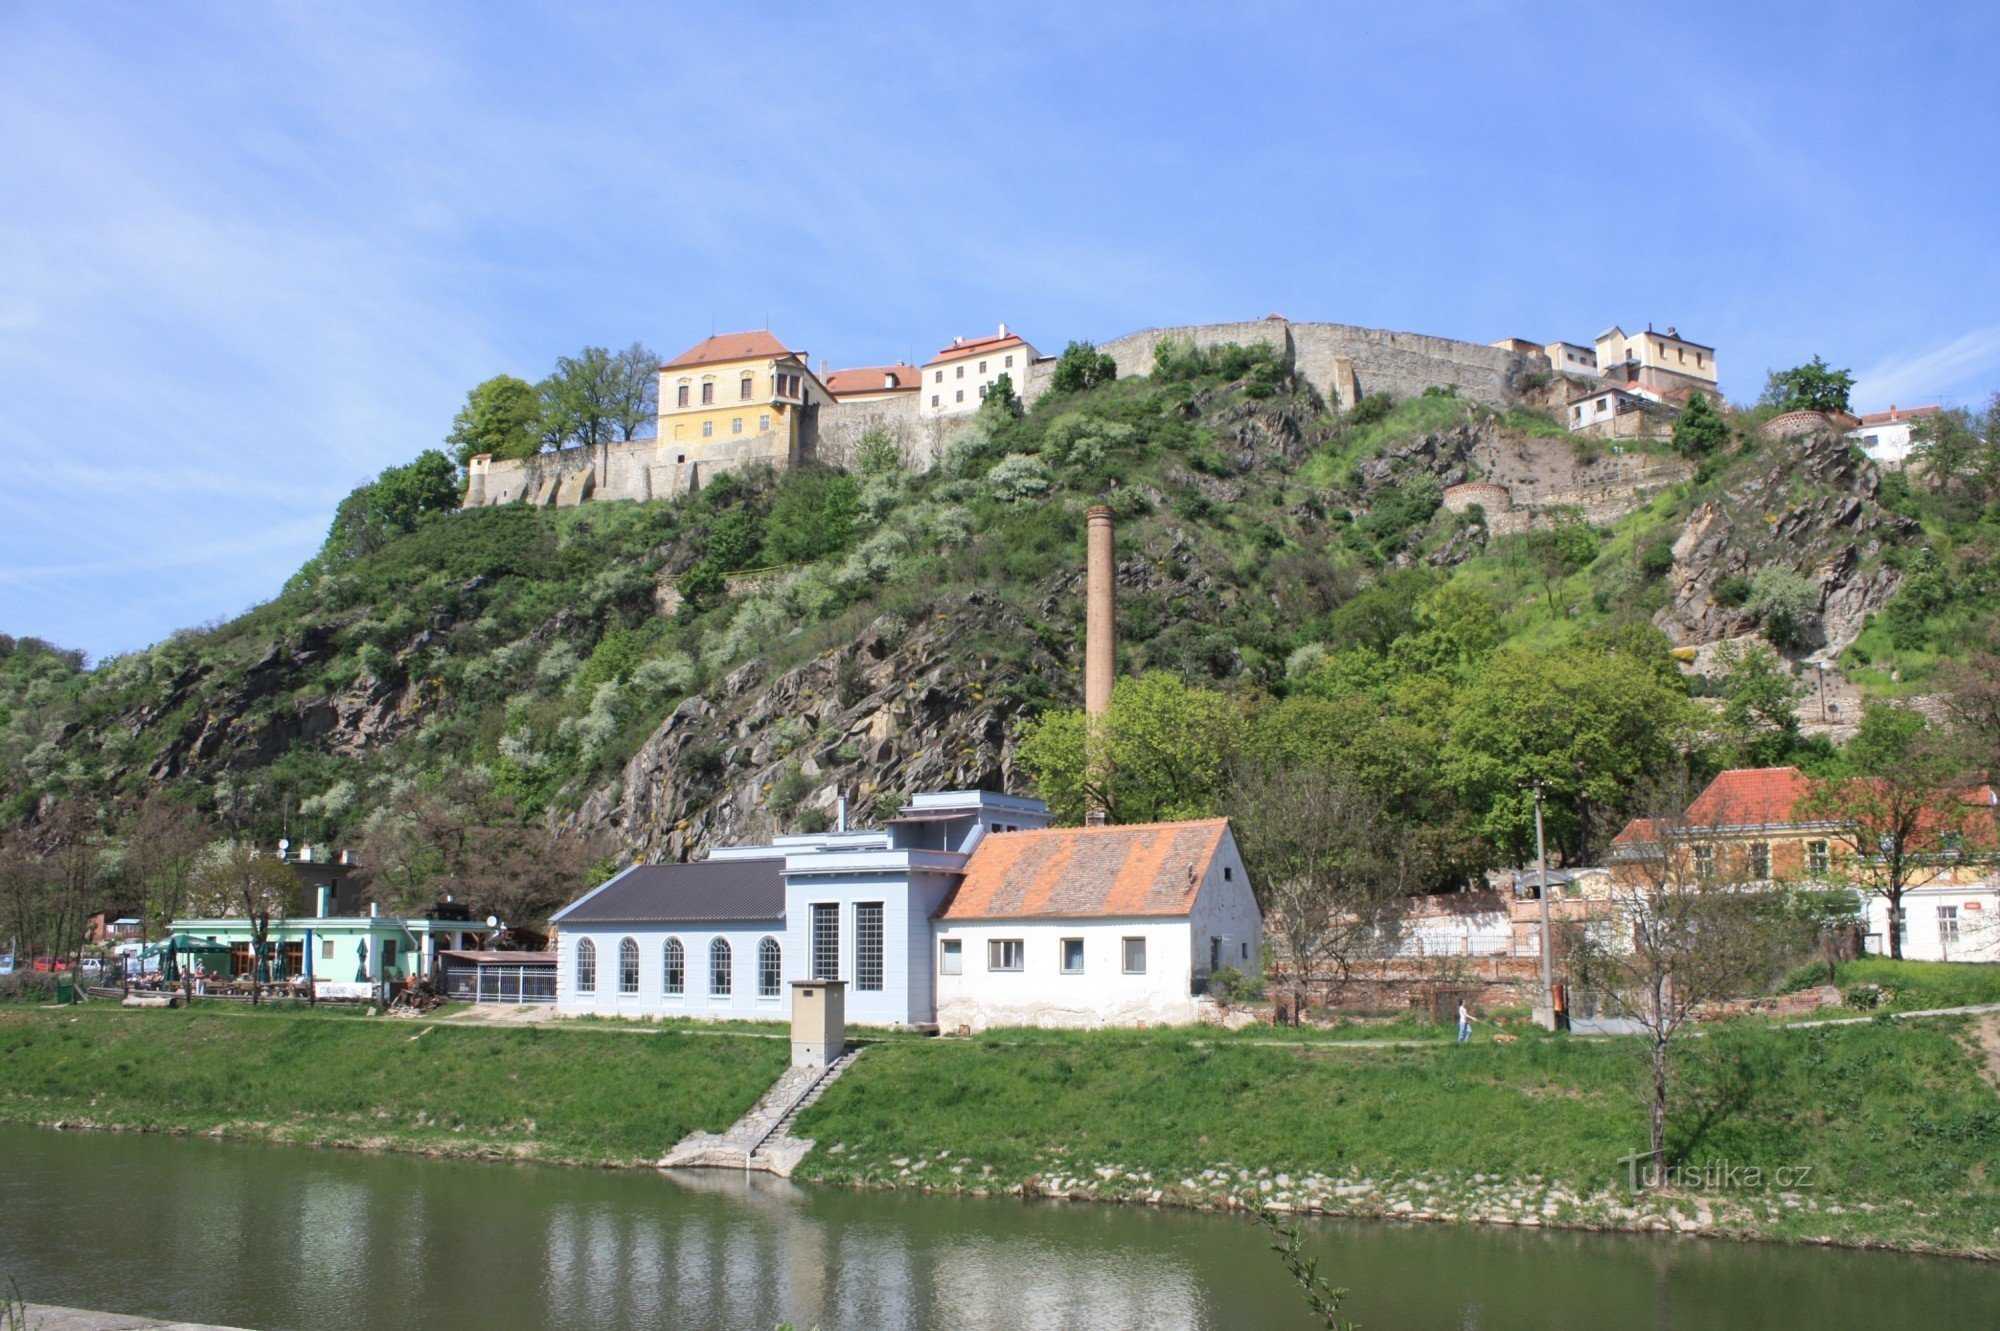 Teil des Viertels Dyjska mit dem Schloss